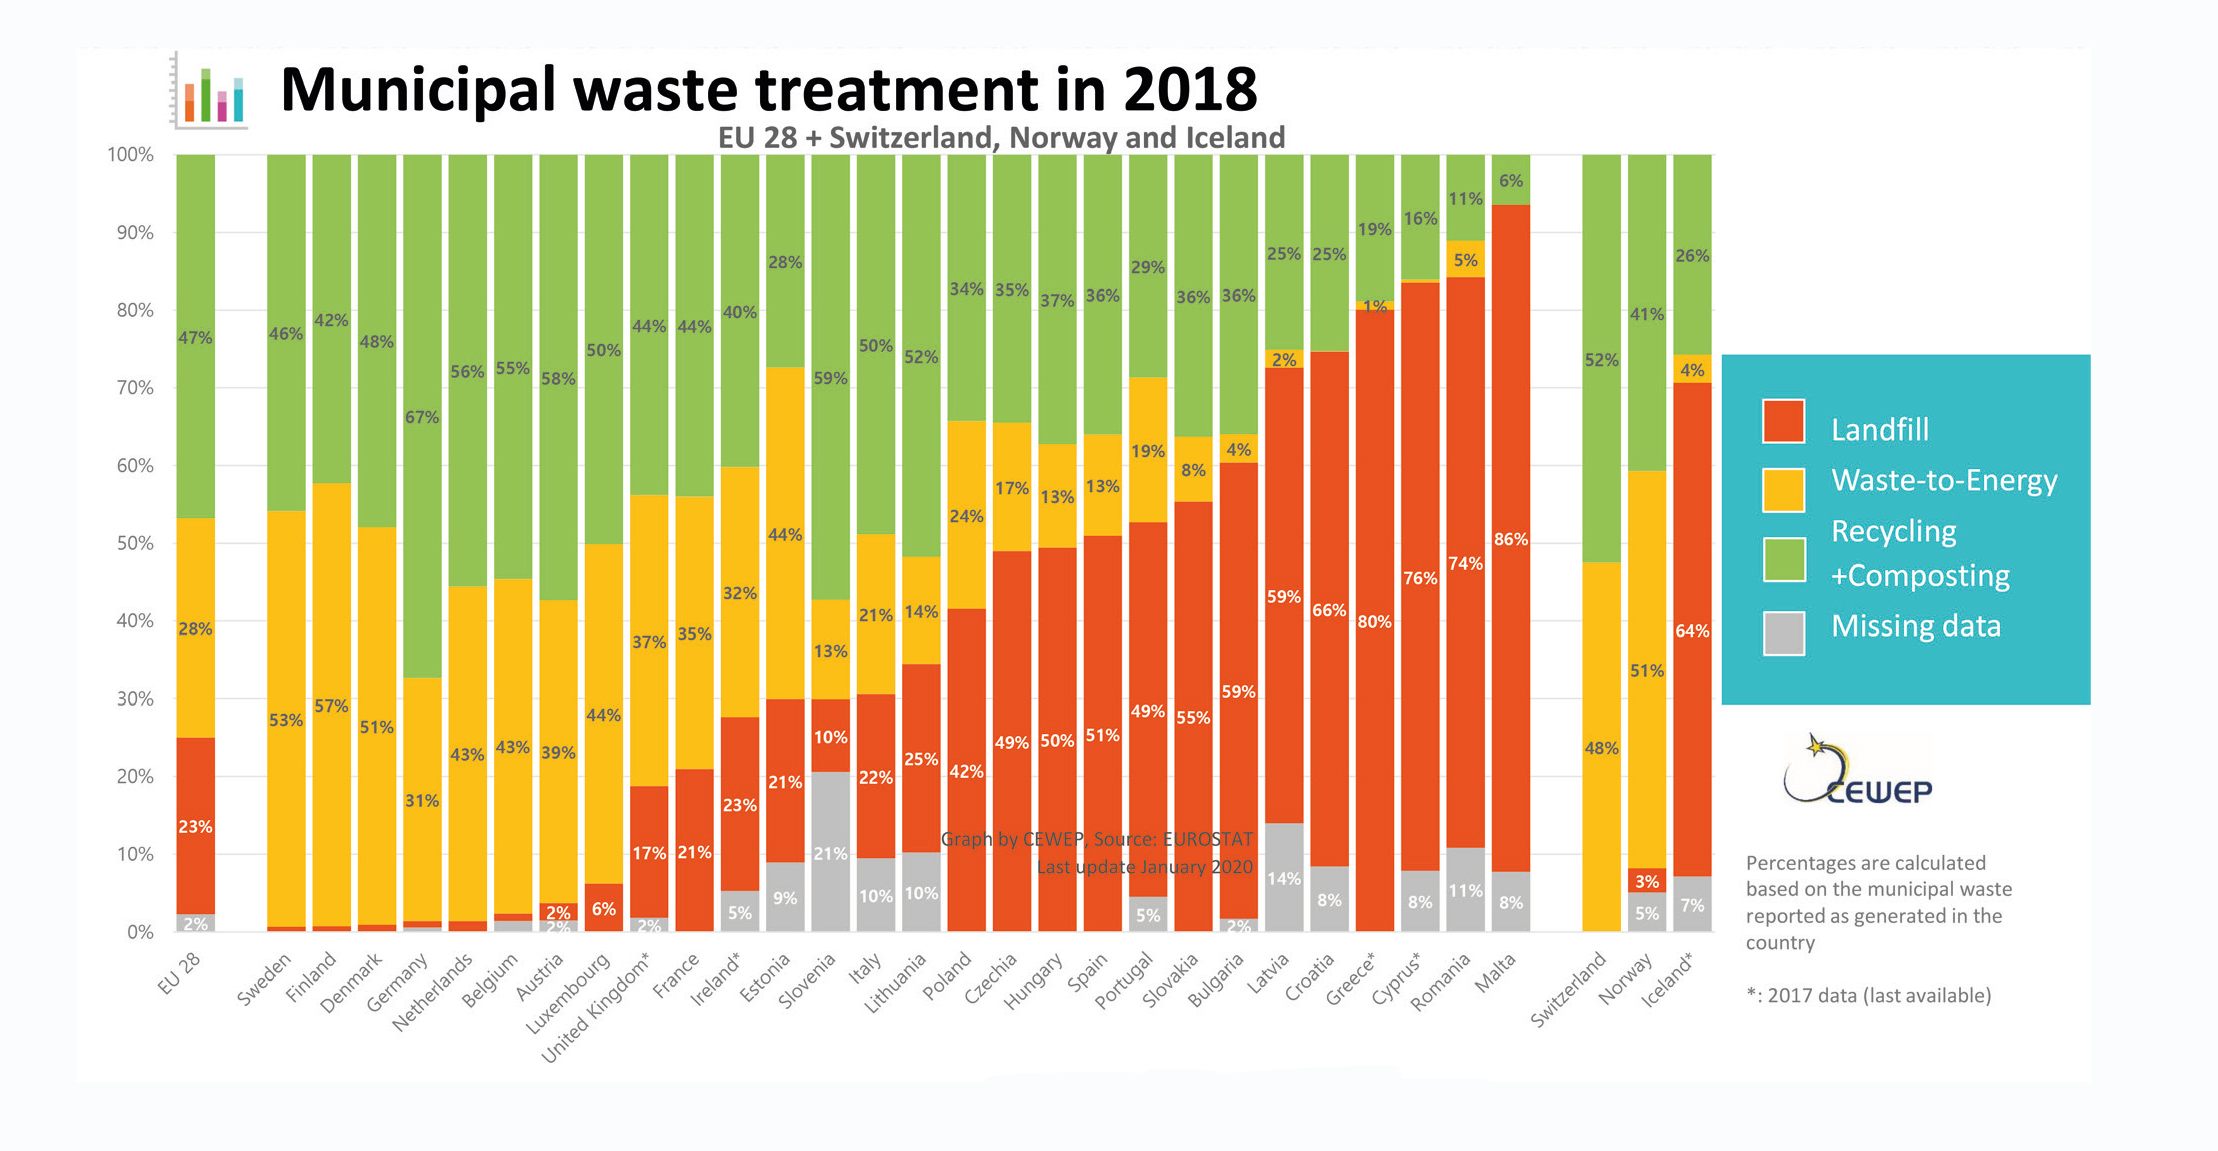 zpusoby vyuzivani komunalniho odpadu v zemich 2018